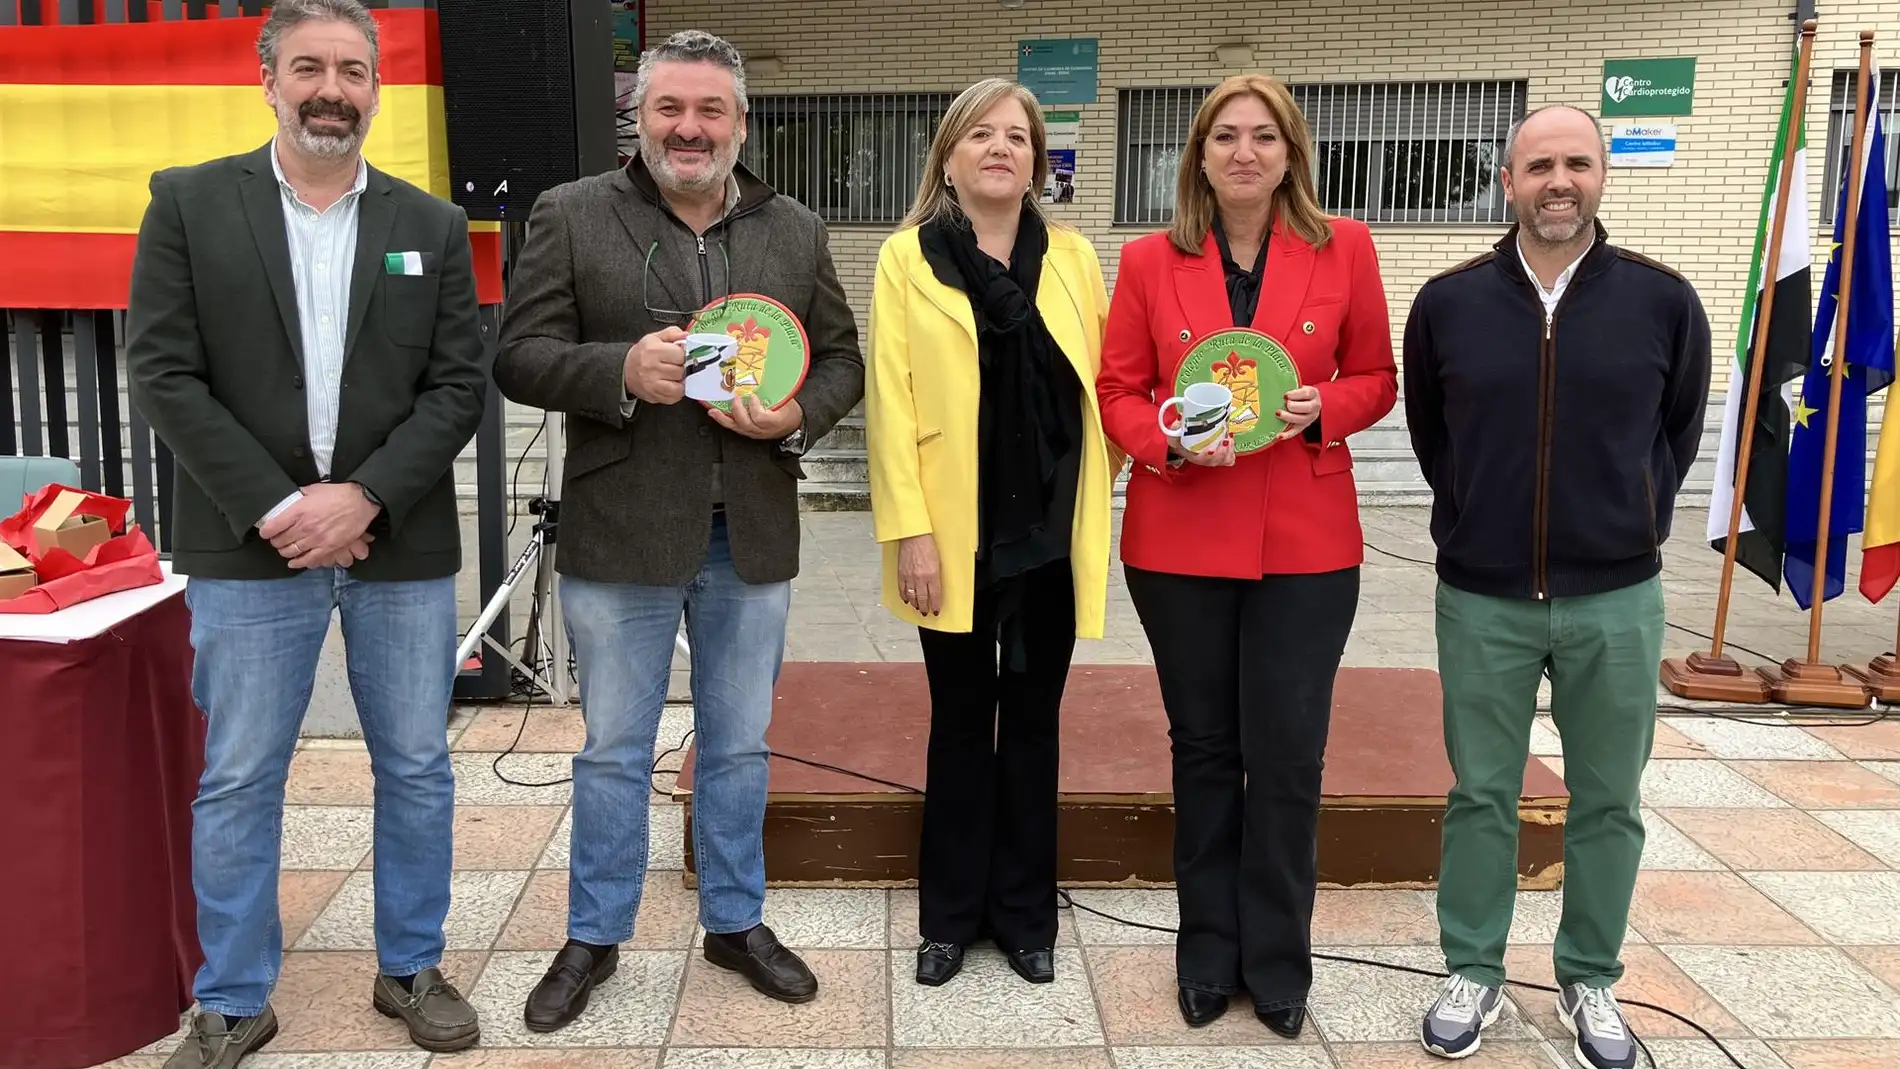 Educación apuesta por tener una Extremadura "de progreso" y "oportunidades de trabajo"